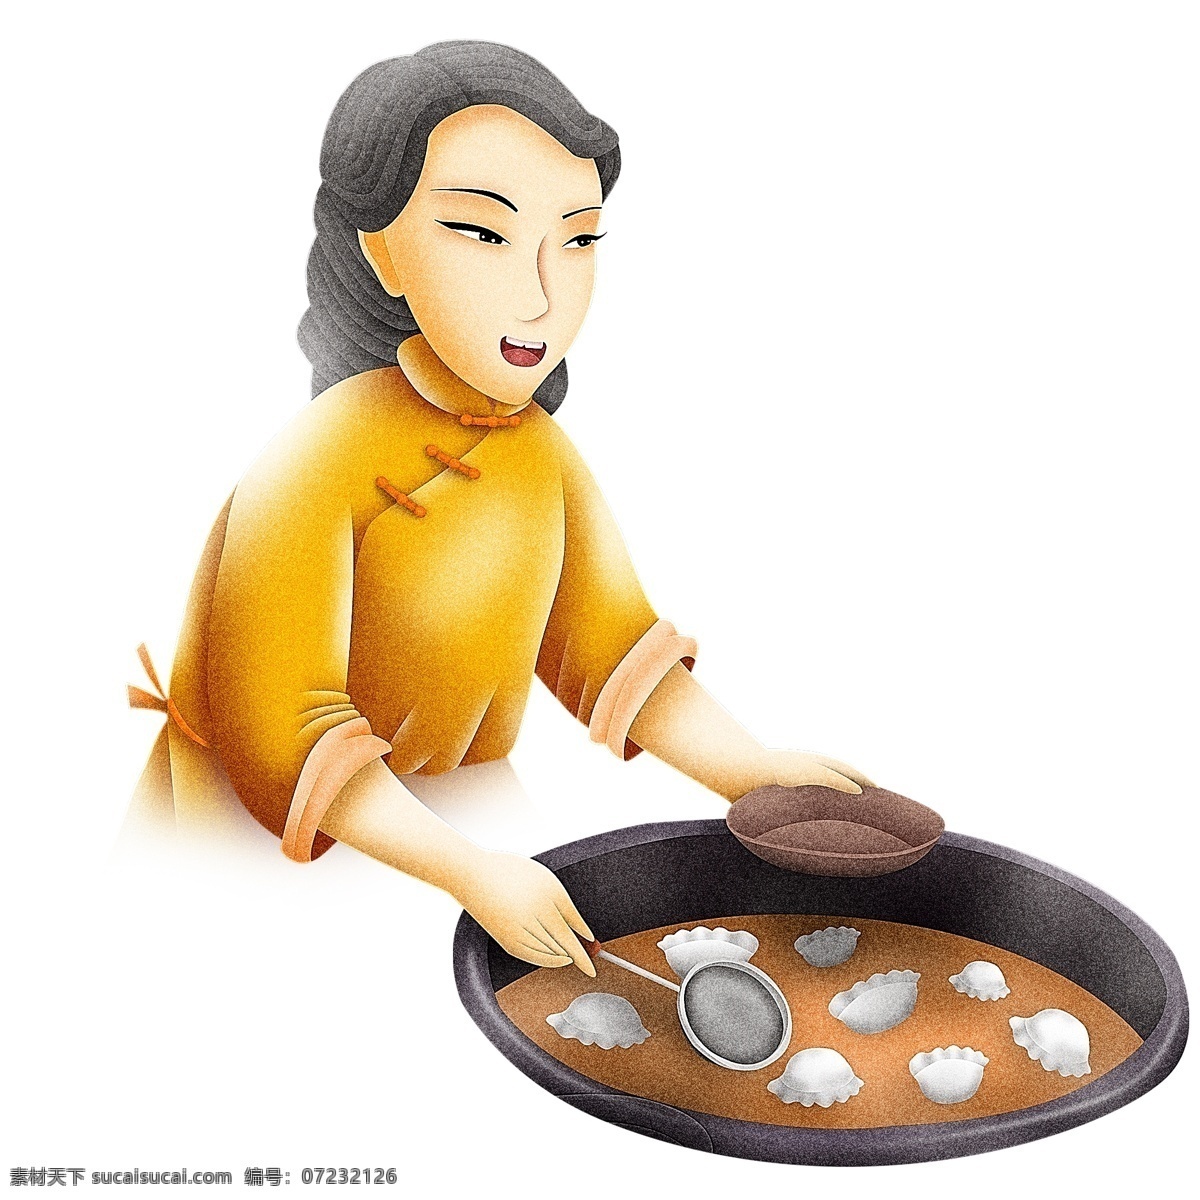 手绘 煮 饺子 中年 妇女 人物 卡通手绘 插画 创意设计 盘子 煮饺子 锅子 漏勺 女人 冬至 二十四节气